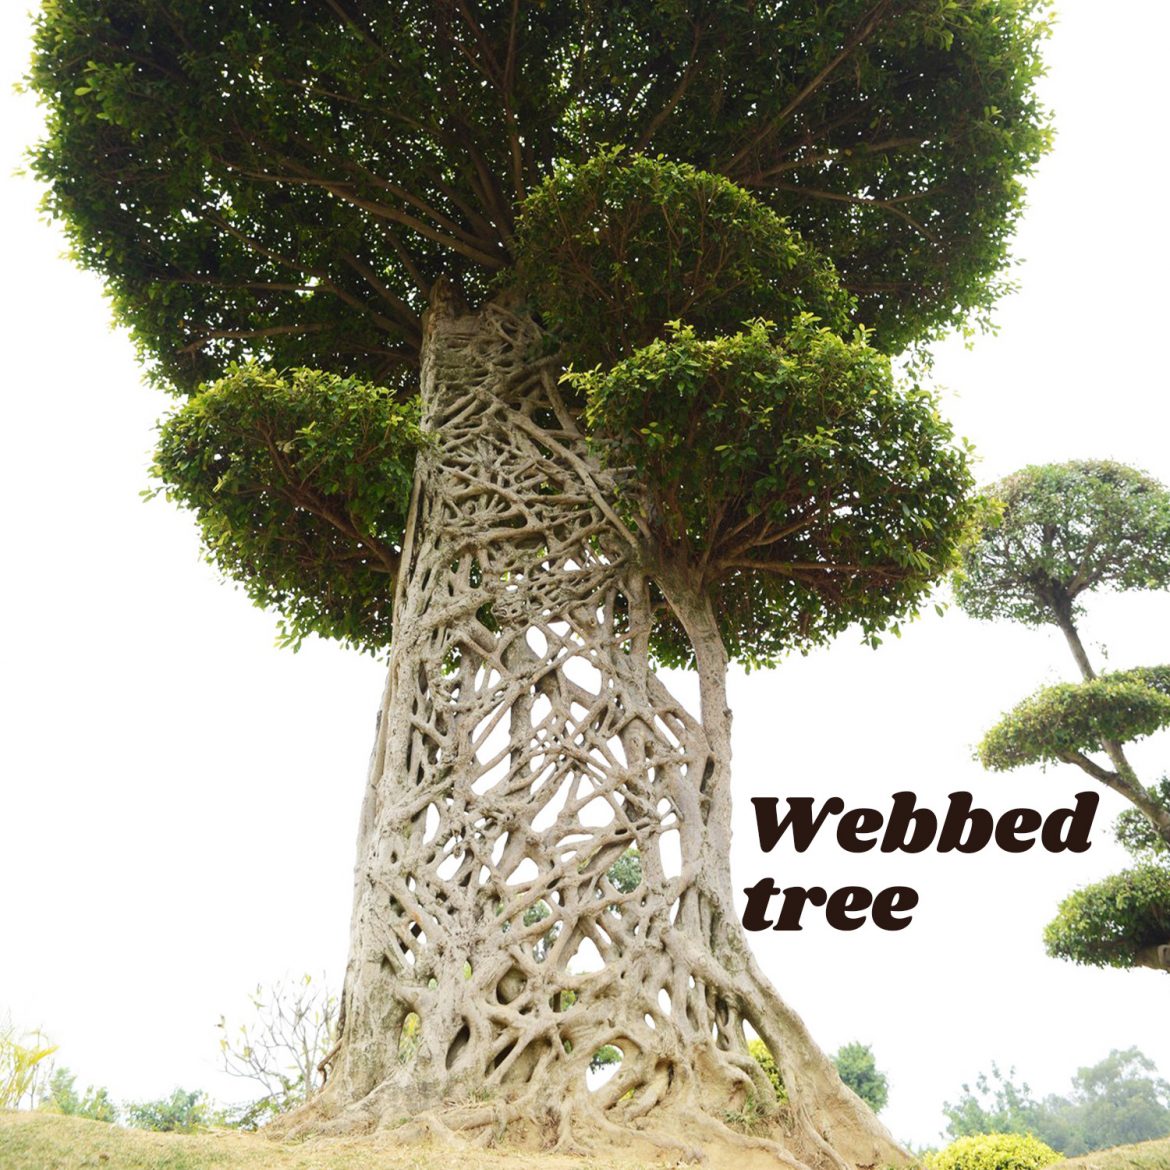 Webbed tree